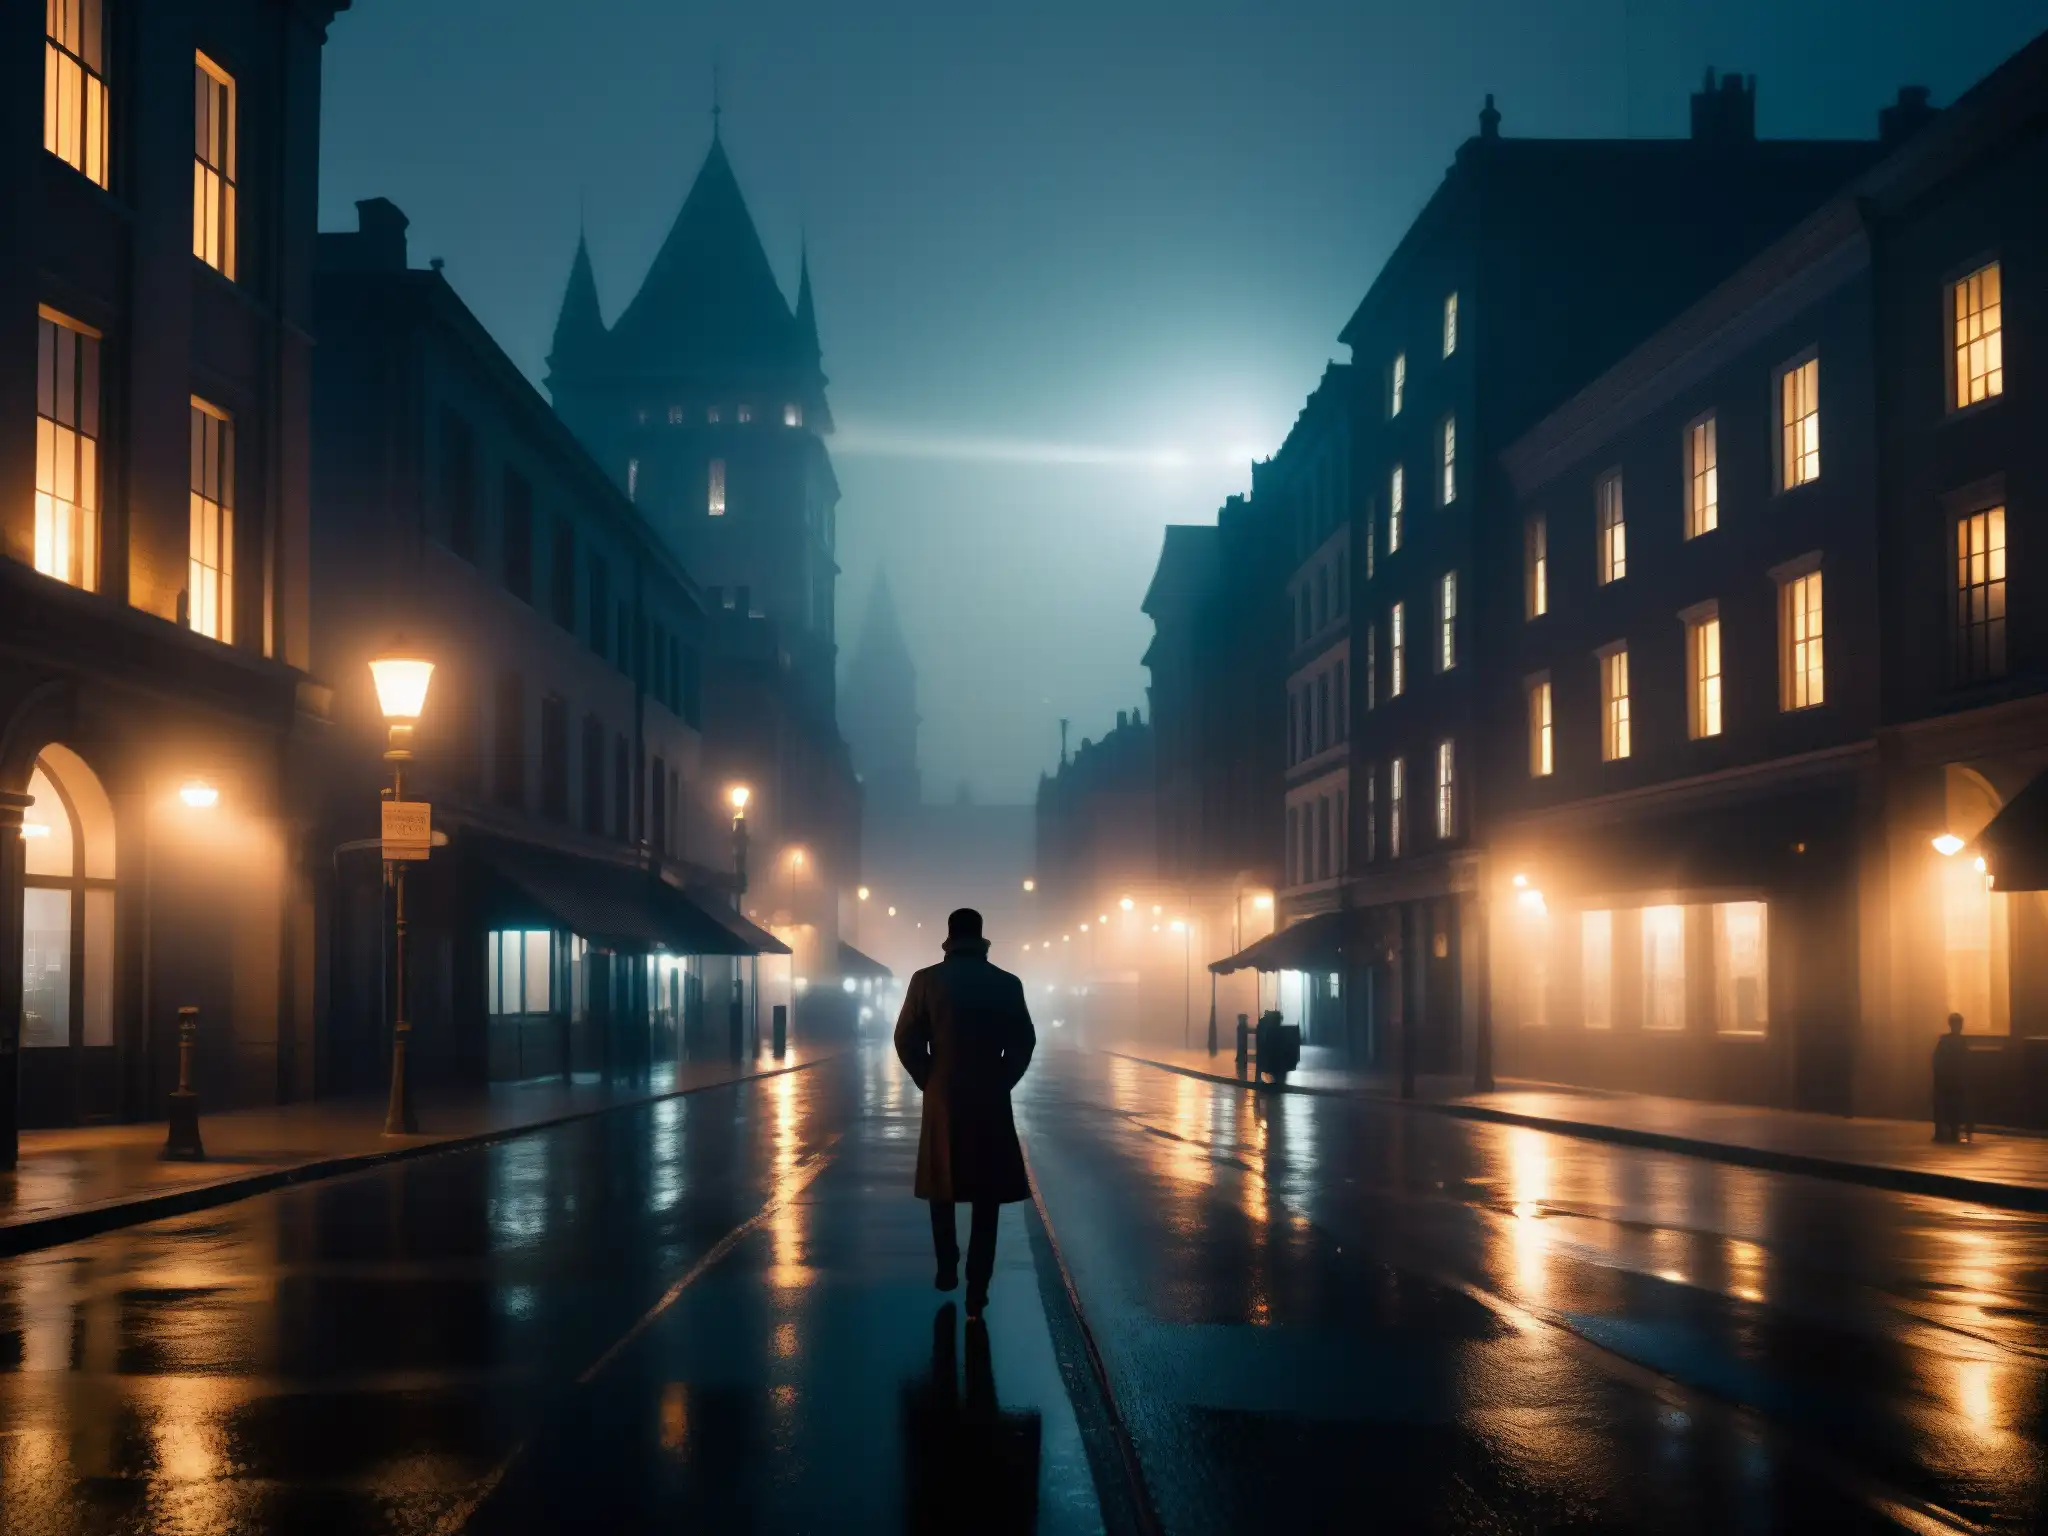 Influencia de leyendas urbanas entretenimiento: calle nocturna misteriosa, luces de la ciudad y siluetas en la niebla